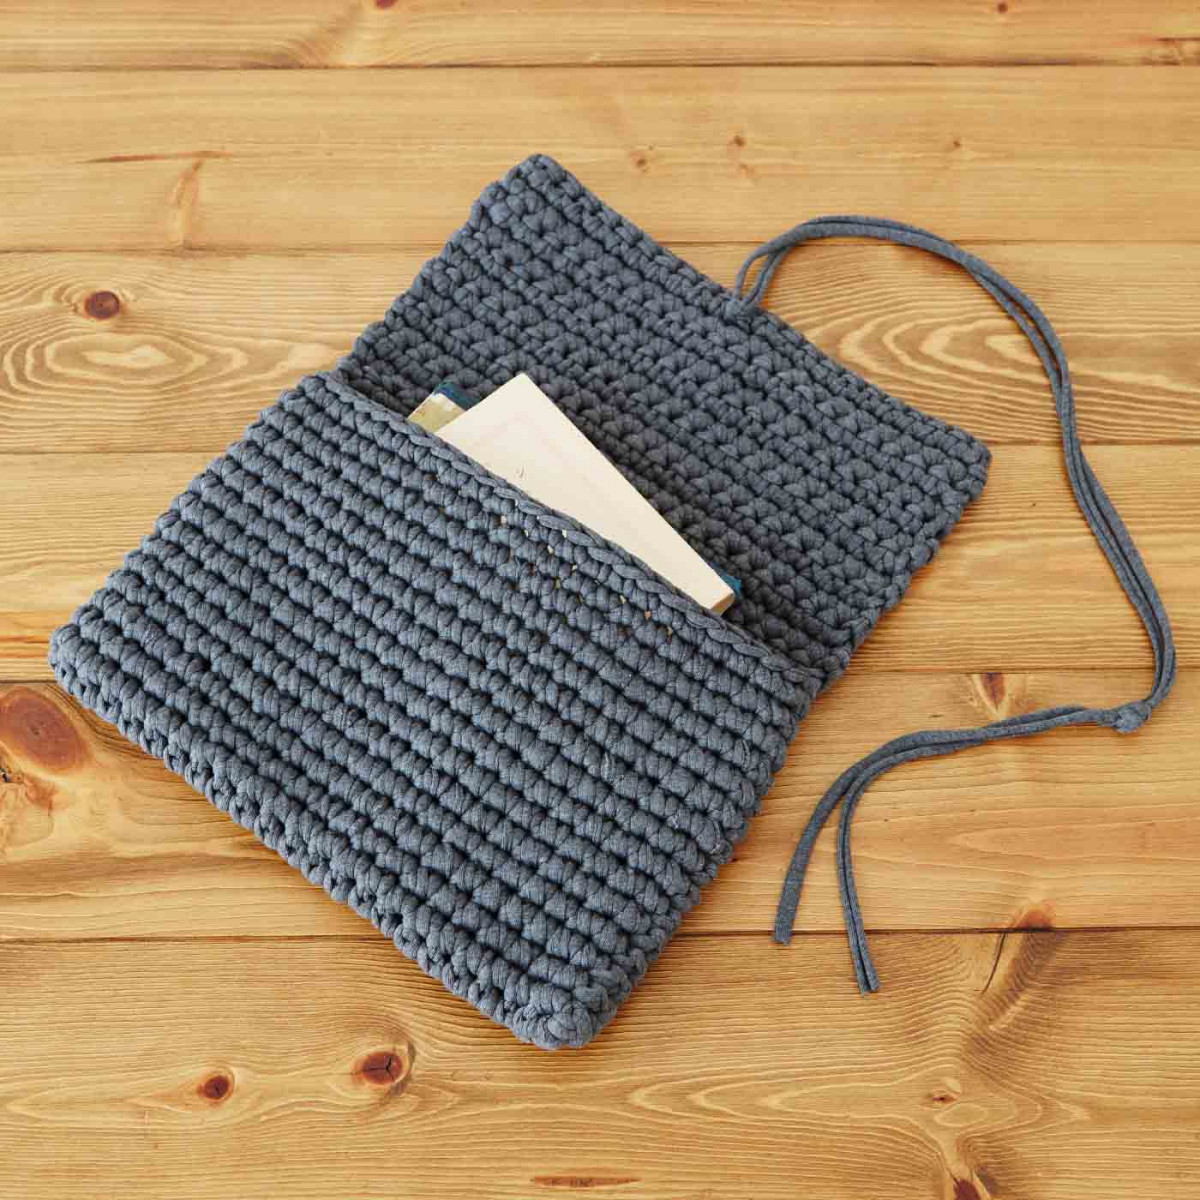 初心者でも簡単 ズパゲッティでザクザク作ろう 手編みのバッグや小物 Weboo ウィーブー 暮らしをつくる